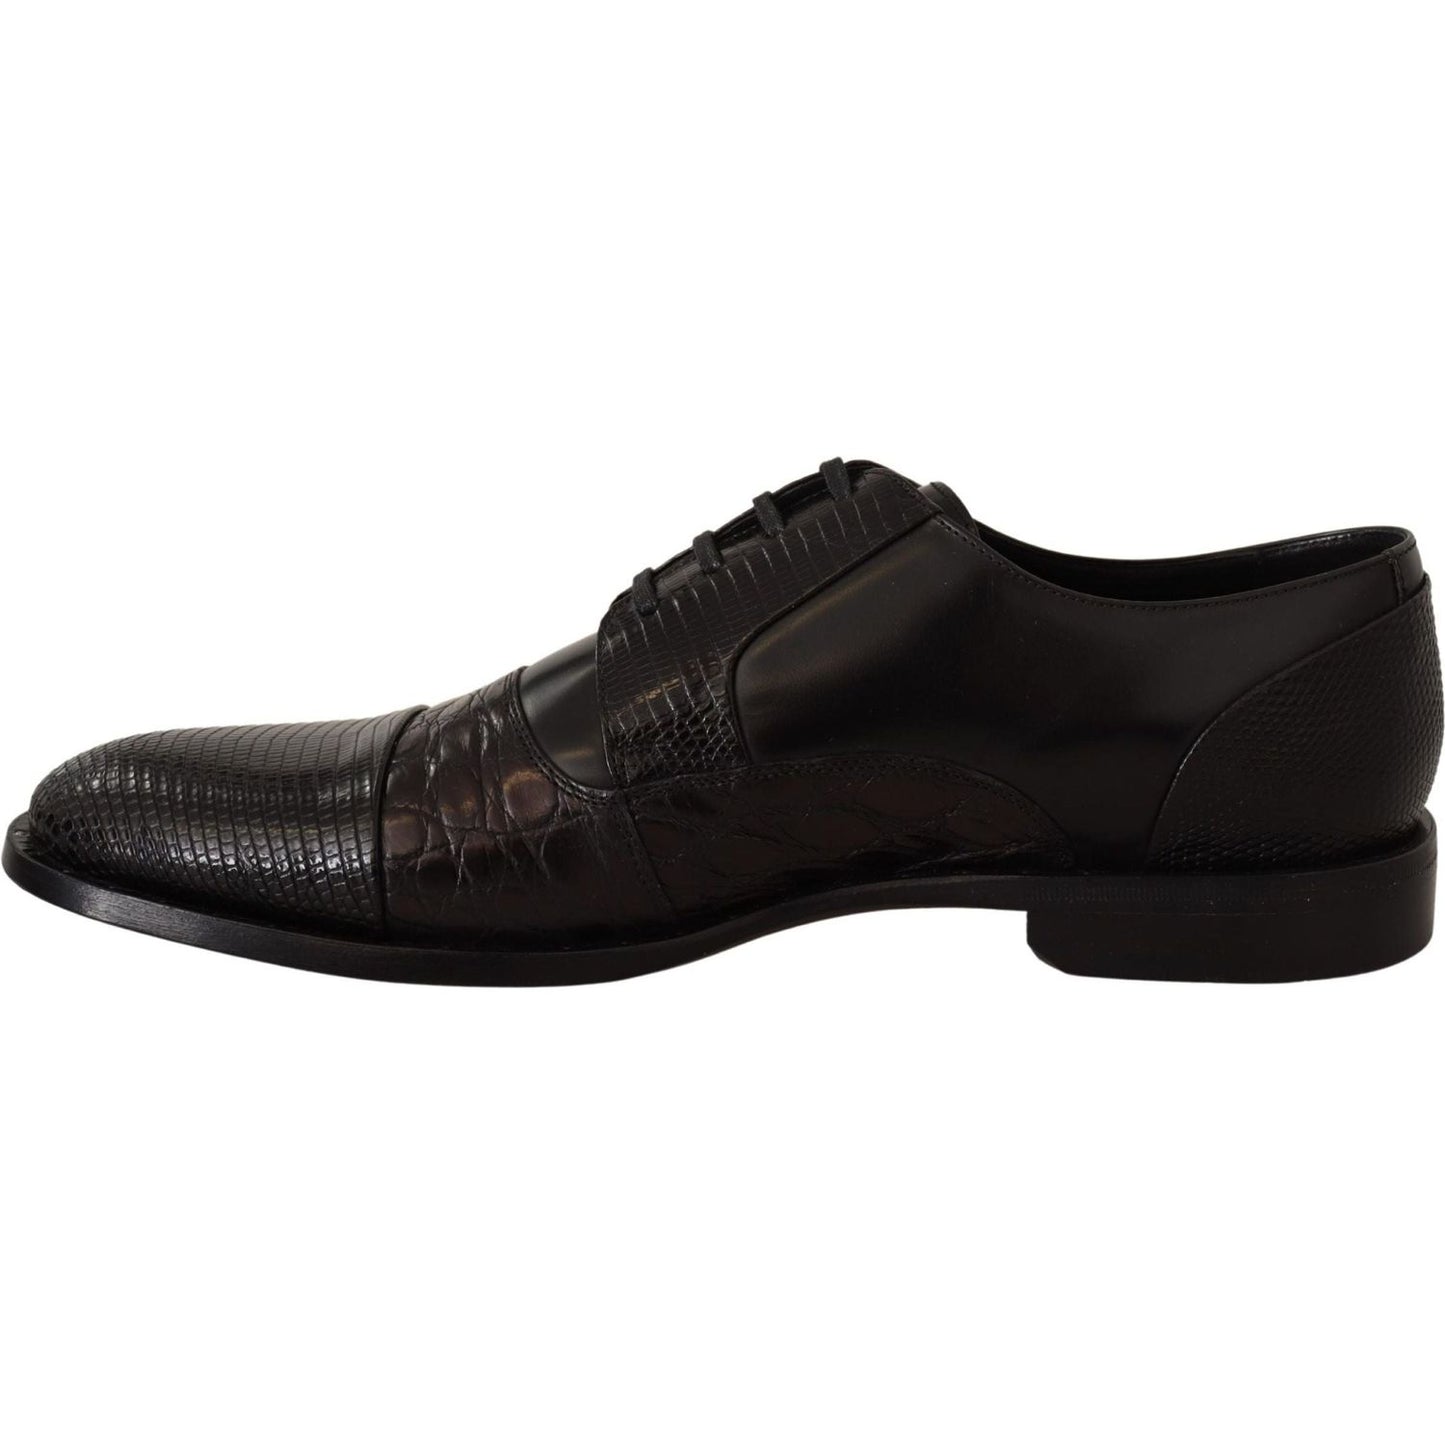 Dolce & Gabbana Elegant Black Derby Oxford Wingtips black-leather-exotic-skins-formal-shoes